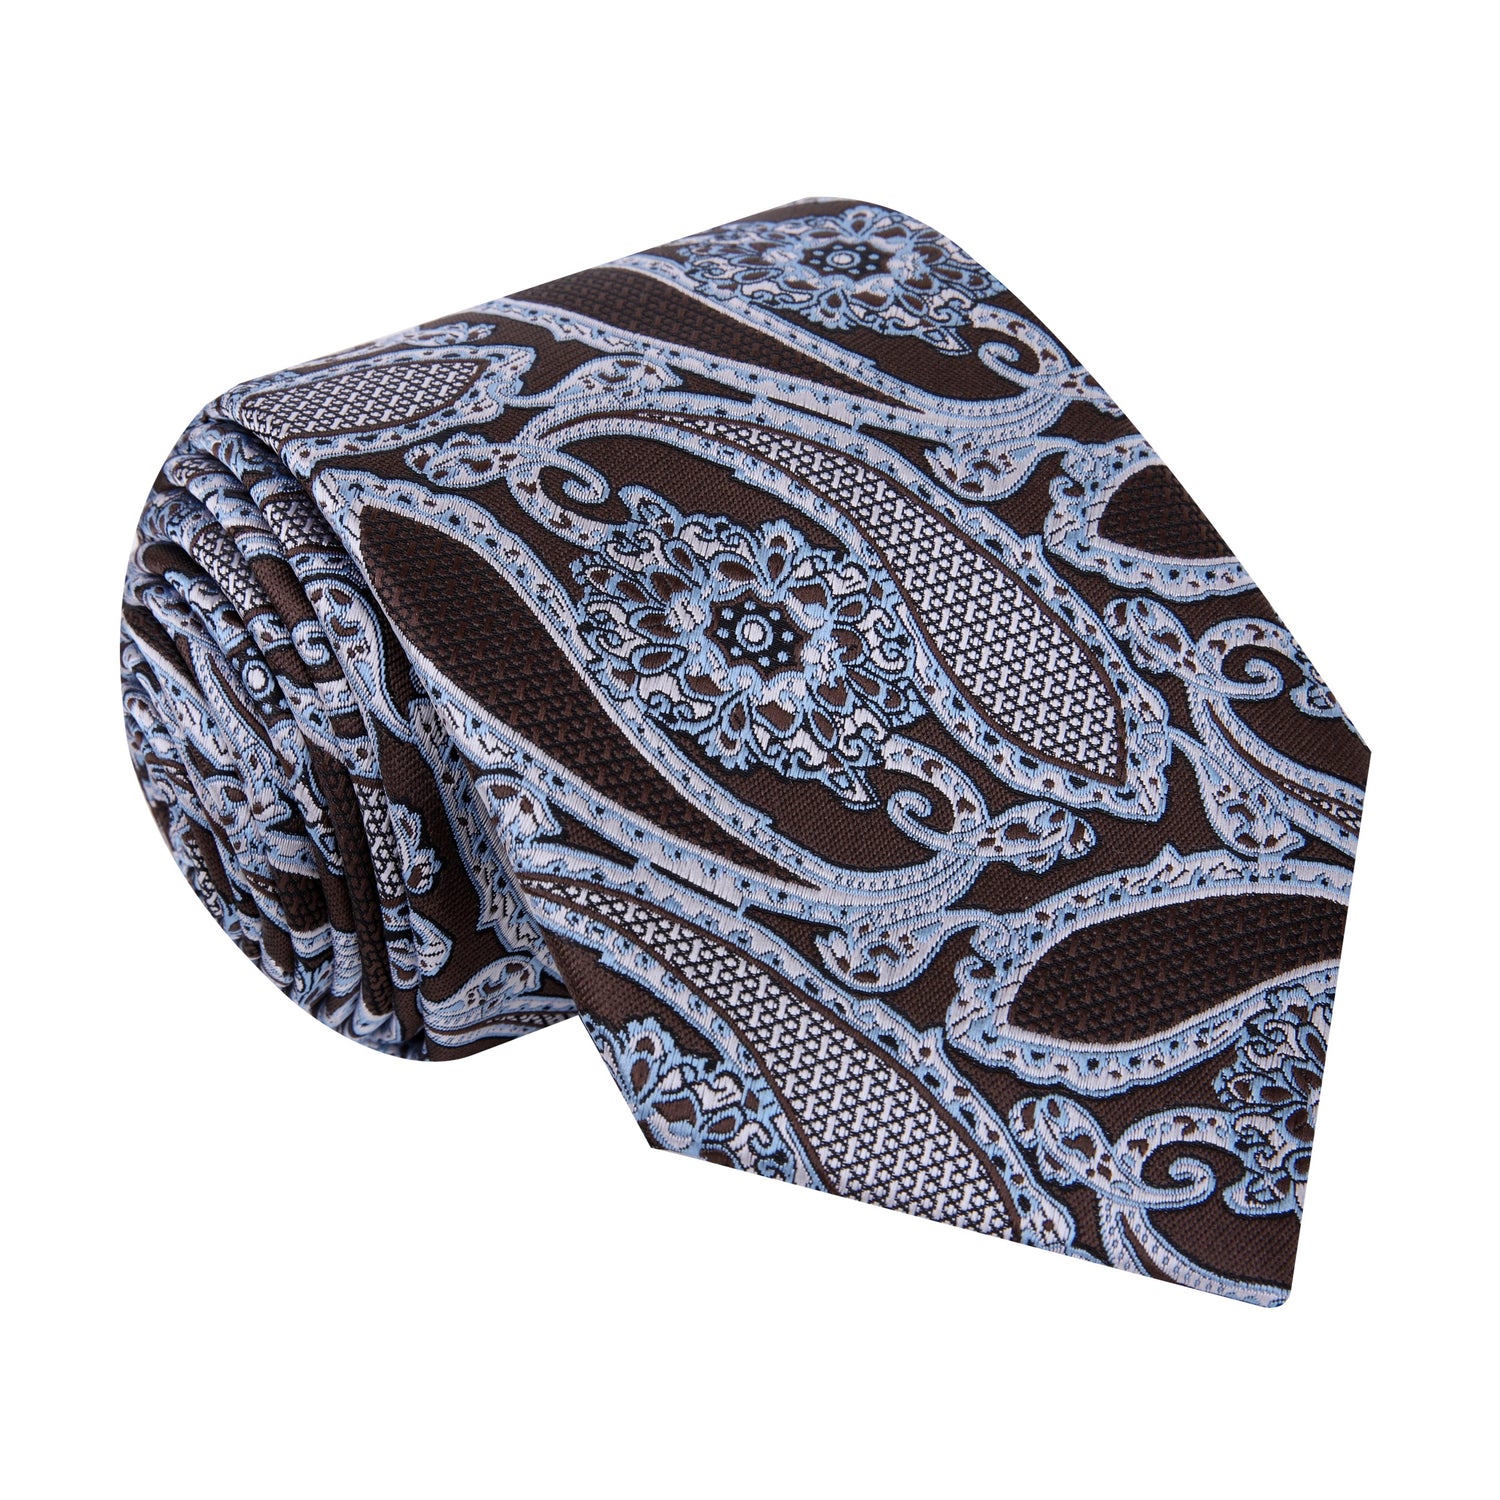 A Brown, Ice Blue, White Paisley Pattern Silk Necktie